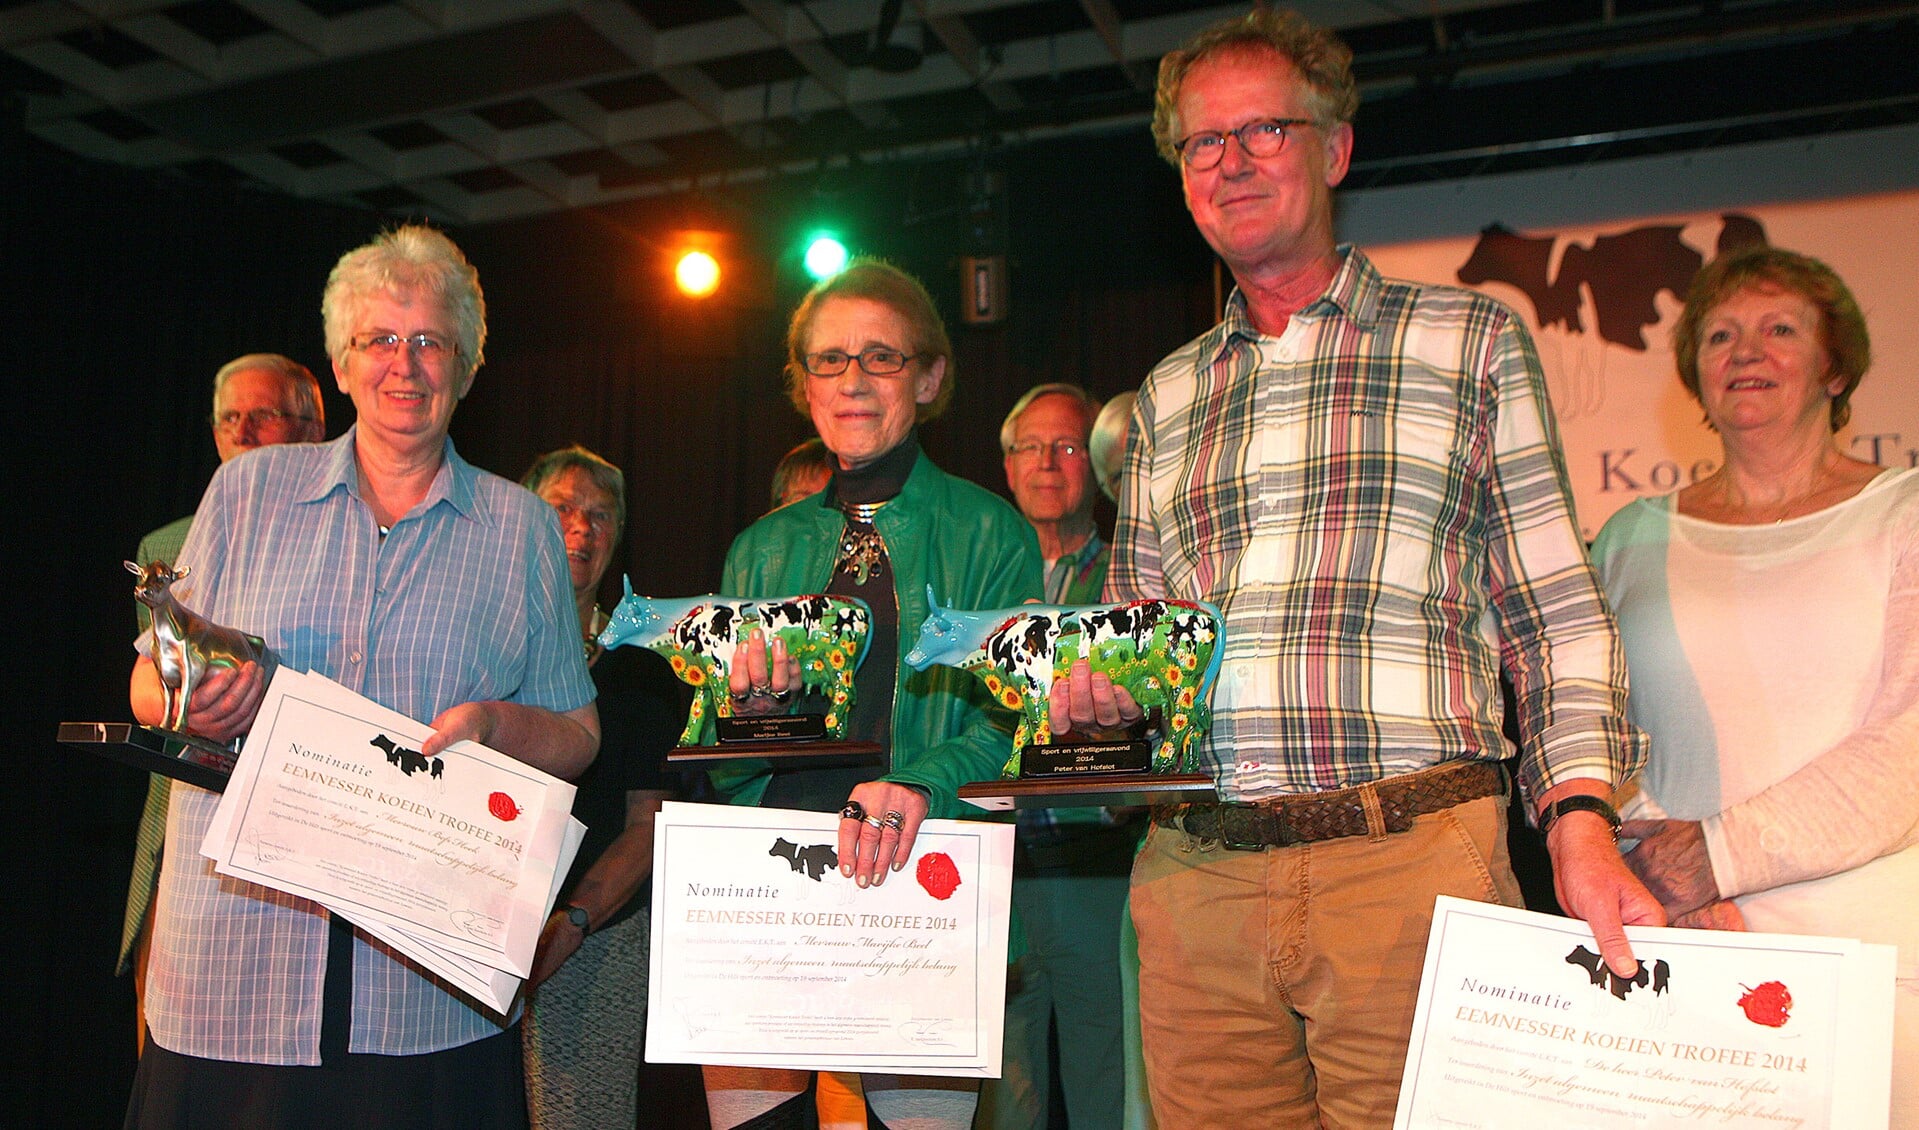 Links Bep Hoek met de trofee met naast haar Marijcke Beel en Peter van Hofslot, die beiden een Kunstkoe kregen